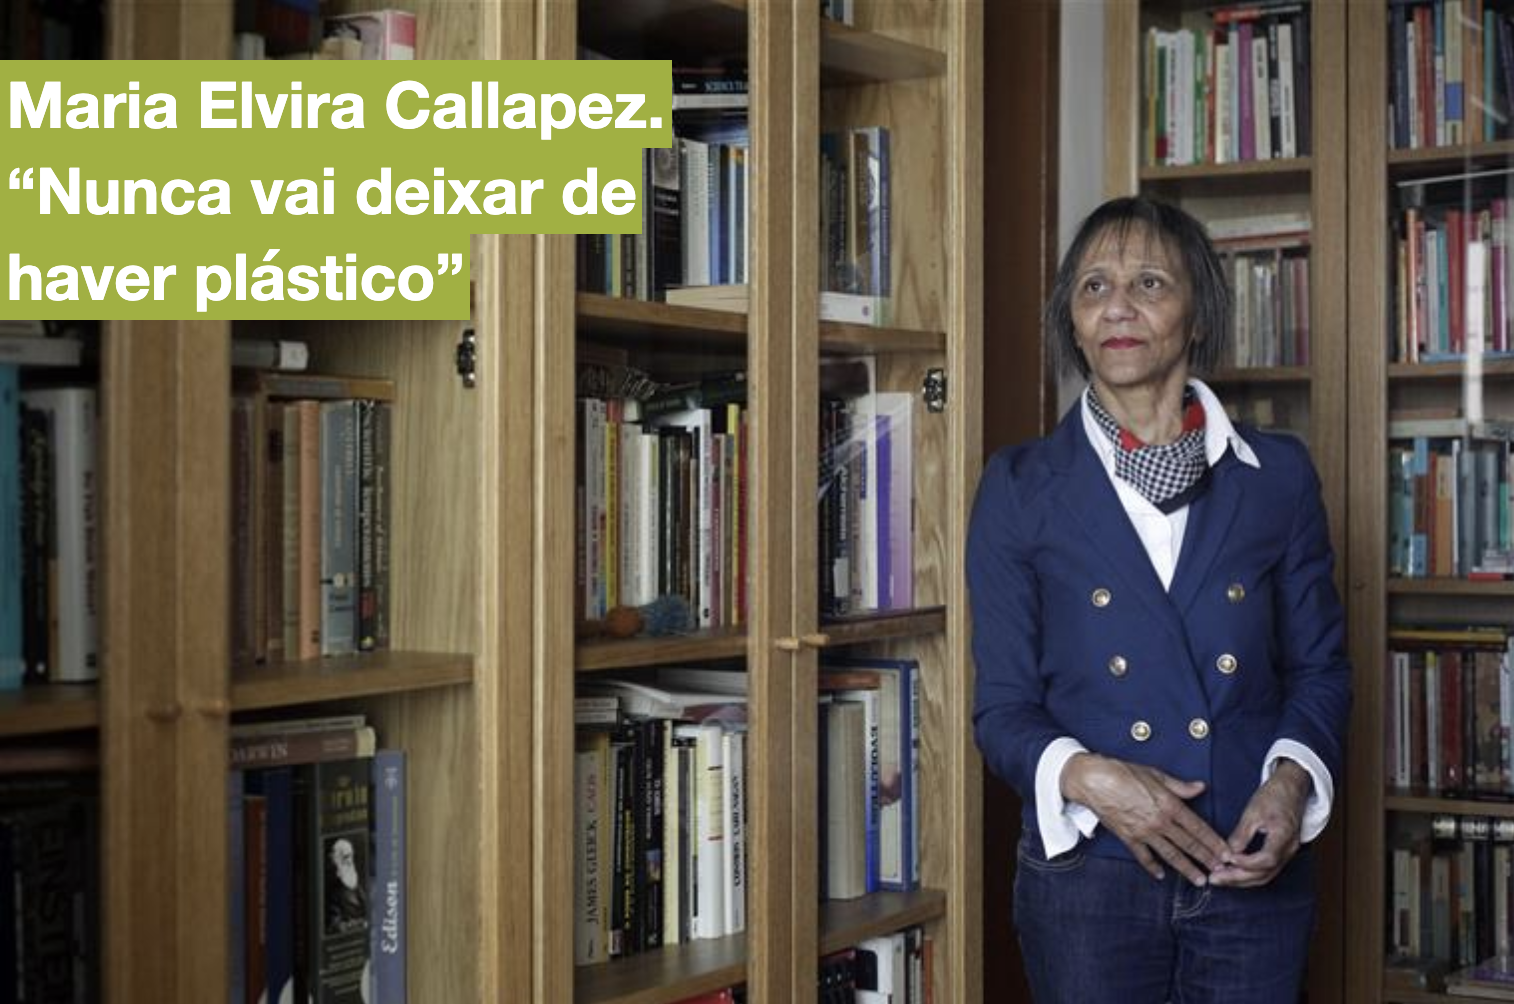 ElviraCallapez-jornalI.png